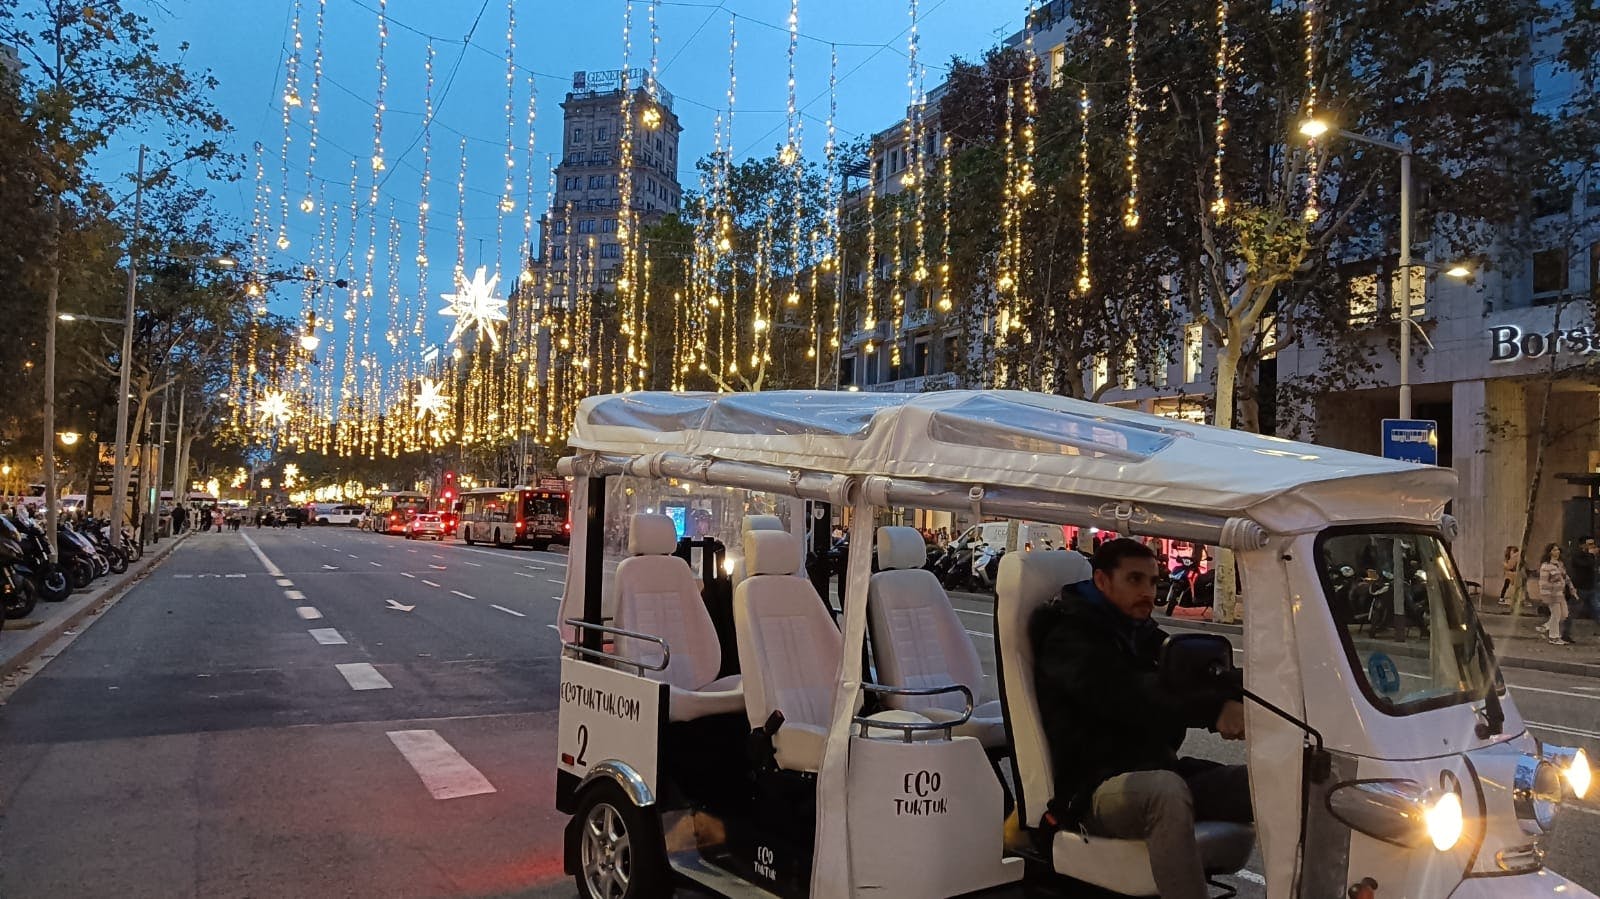 Barcelona Christmas Lights Tour on a Private Eco Tuk Tuk